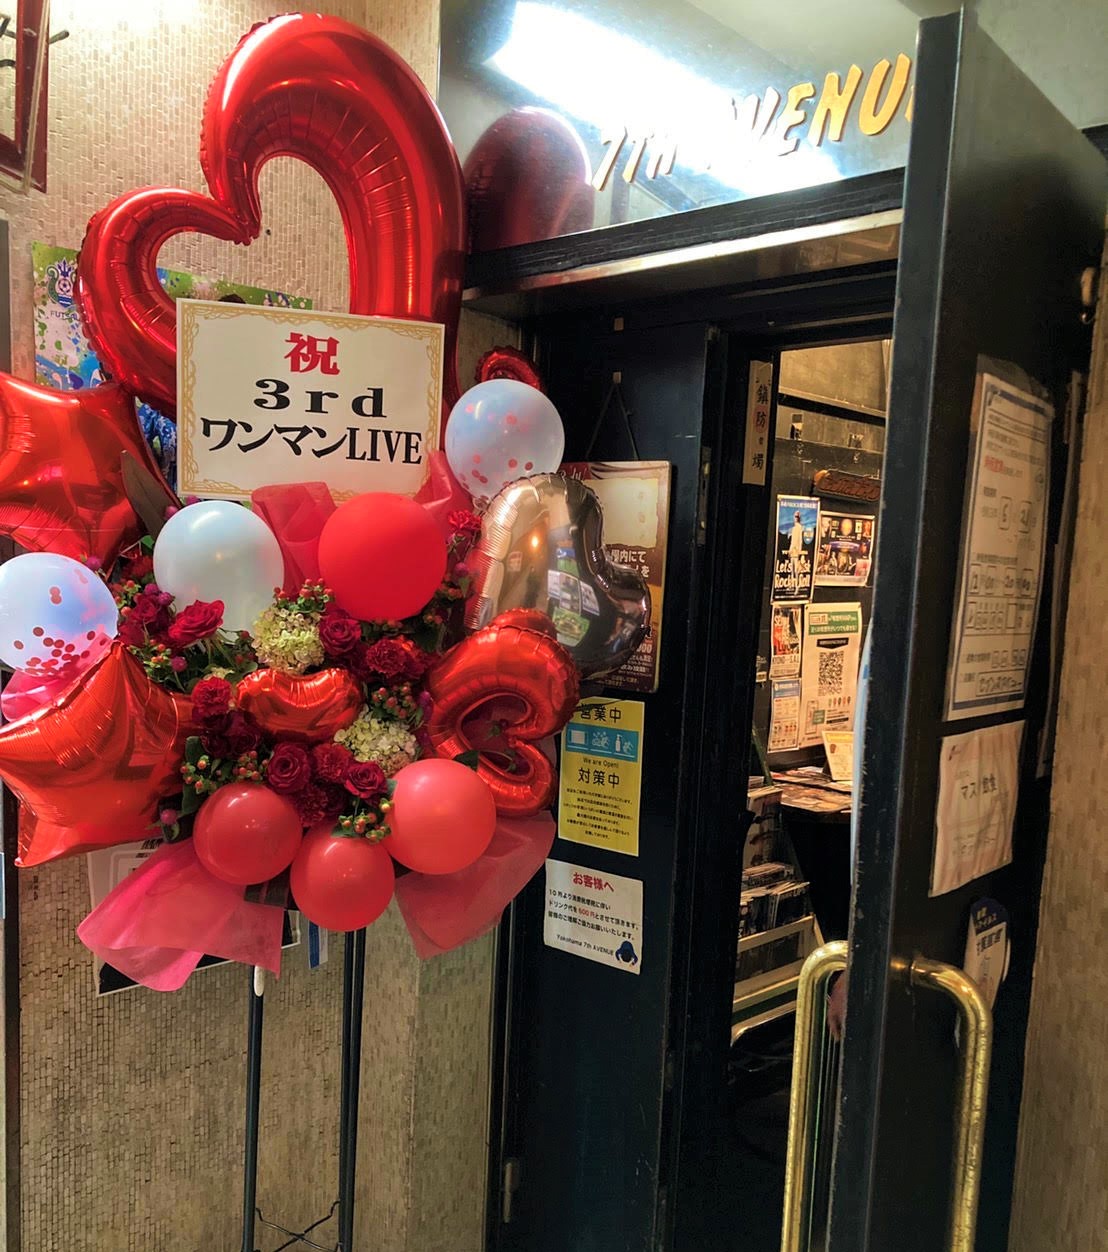 横浜7th avenueへフラワーバルーンスタンド花を配達しました。【横浜花屋の花束・スタンド花・胡蝶蘭・バルーン・アレンジメント配達事例927】